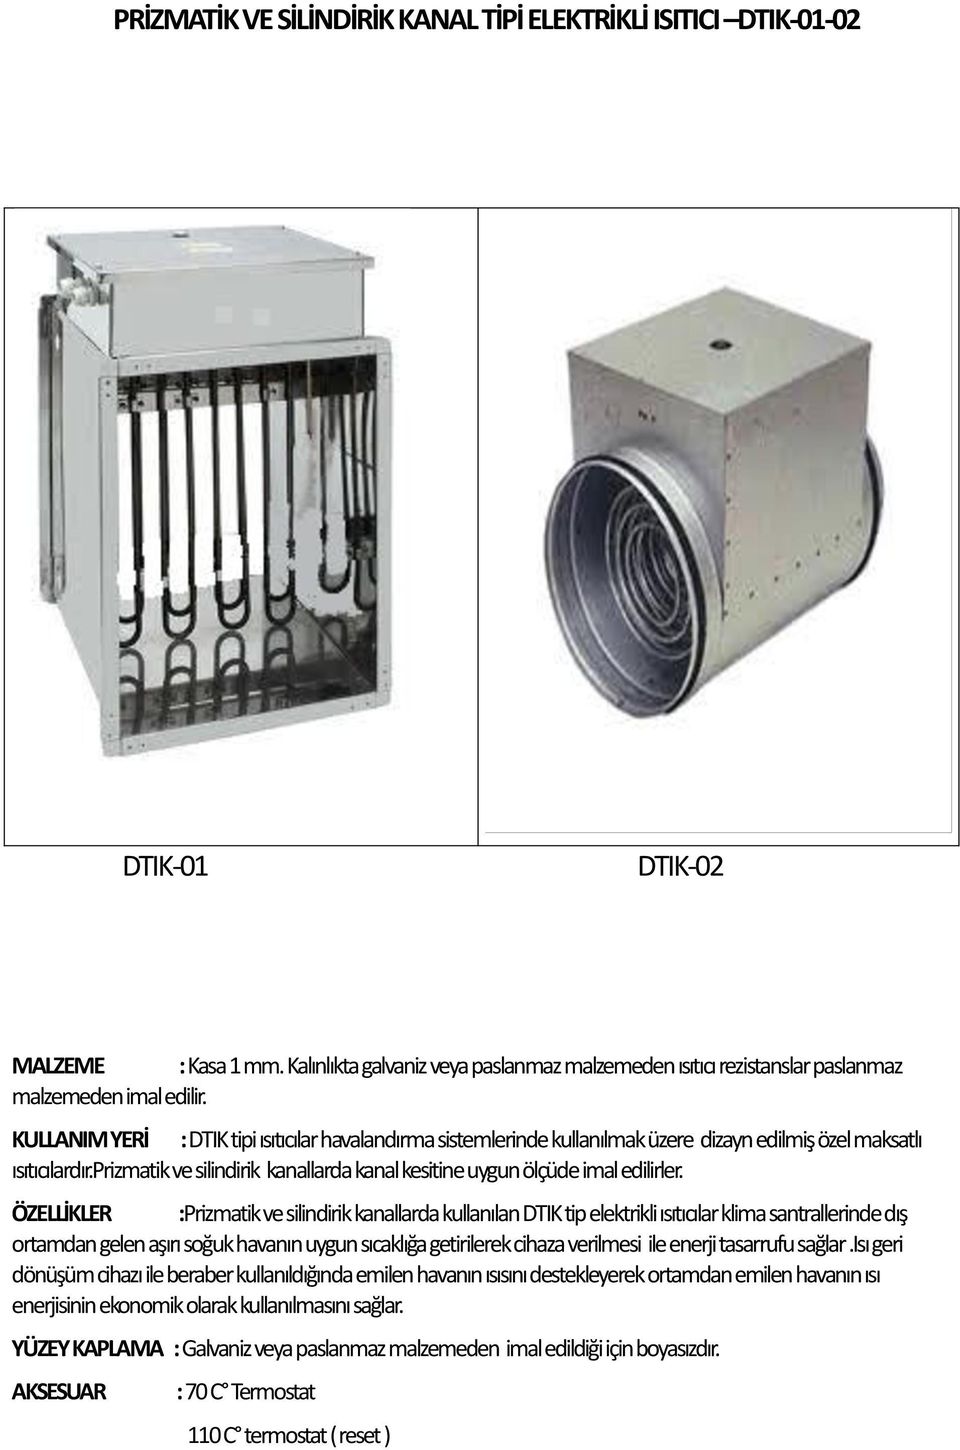 KULLANIM YERİ : DTIK tipi ısıtıcılar havalandırma sistemlerinde kullanılmak üzere dizayn edilmiş özel maksatlı ısıtıcılardır.